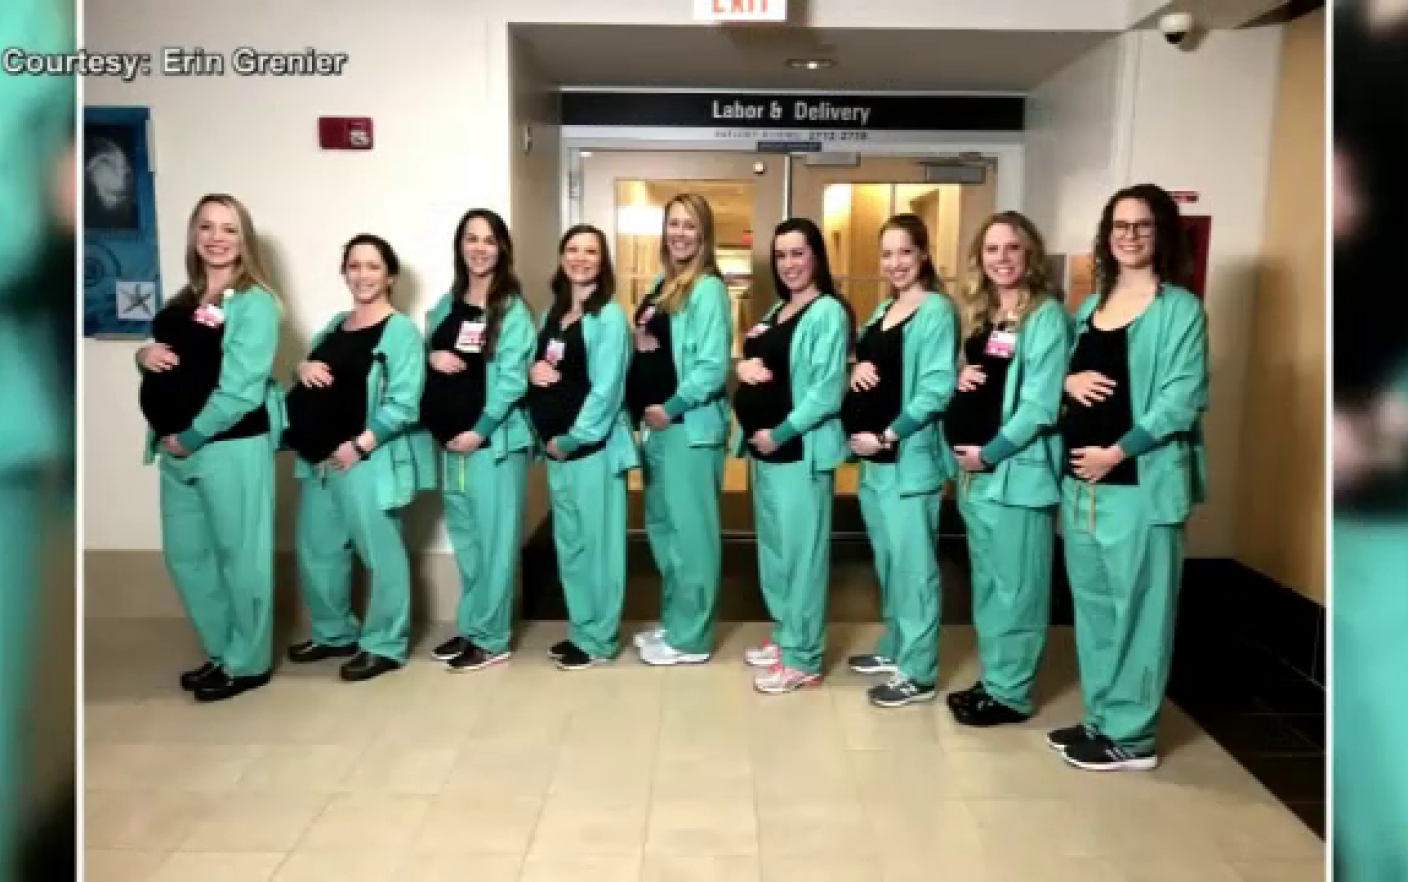 Nouă asistente dintr-o secție au rămas gravide în același timp. Explicația șefului